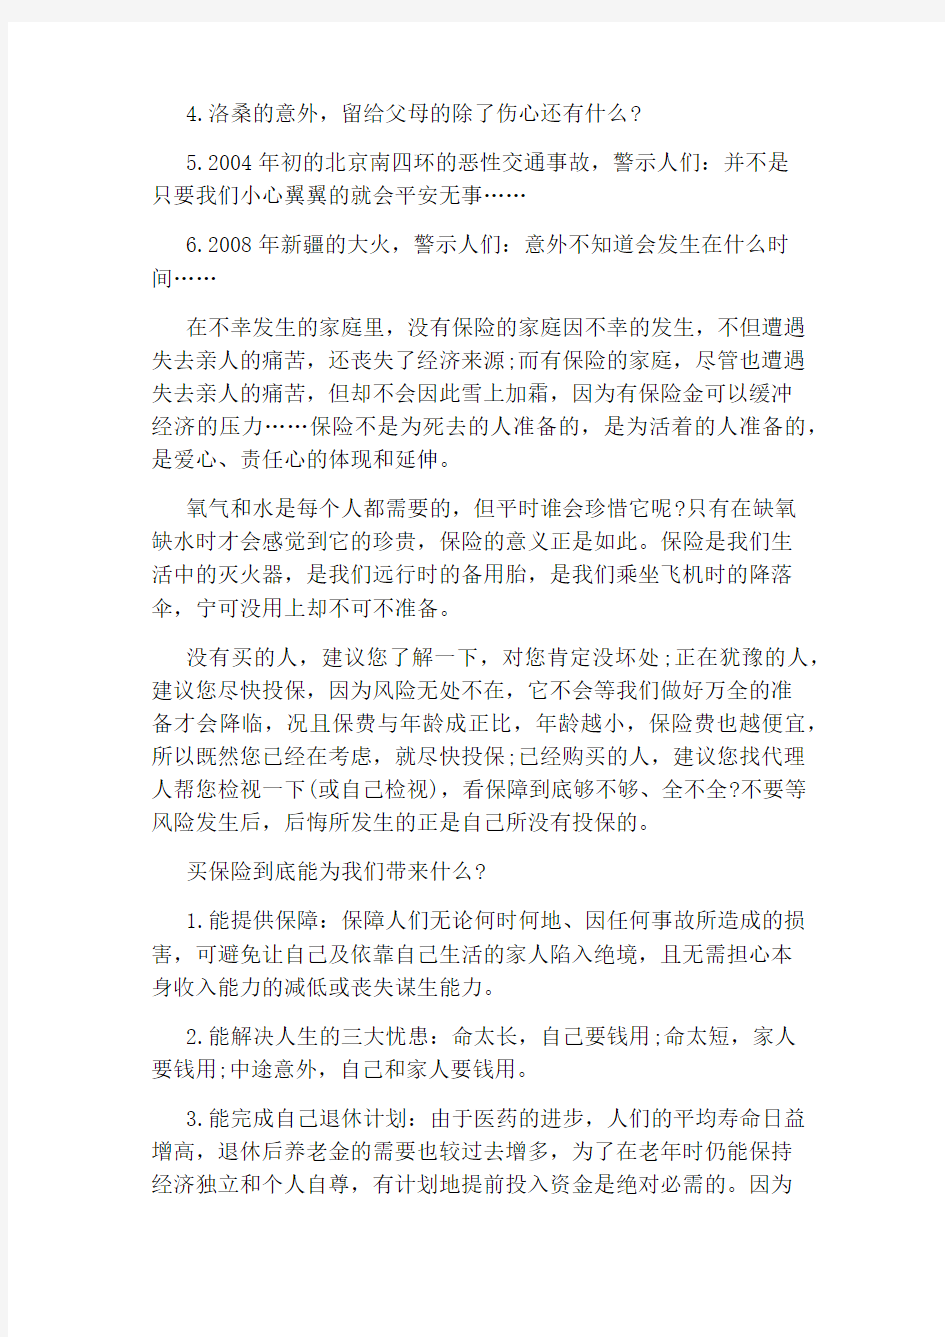 中国人寿保险致客户的一封信